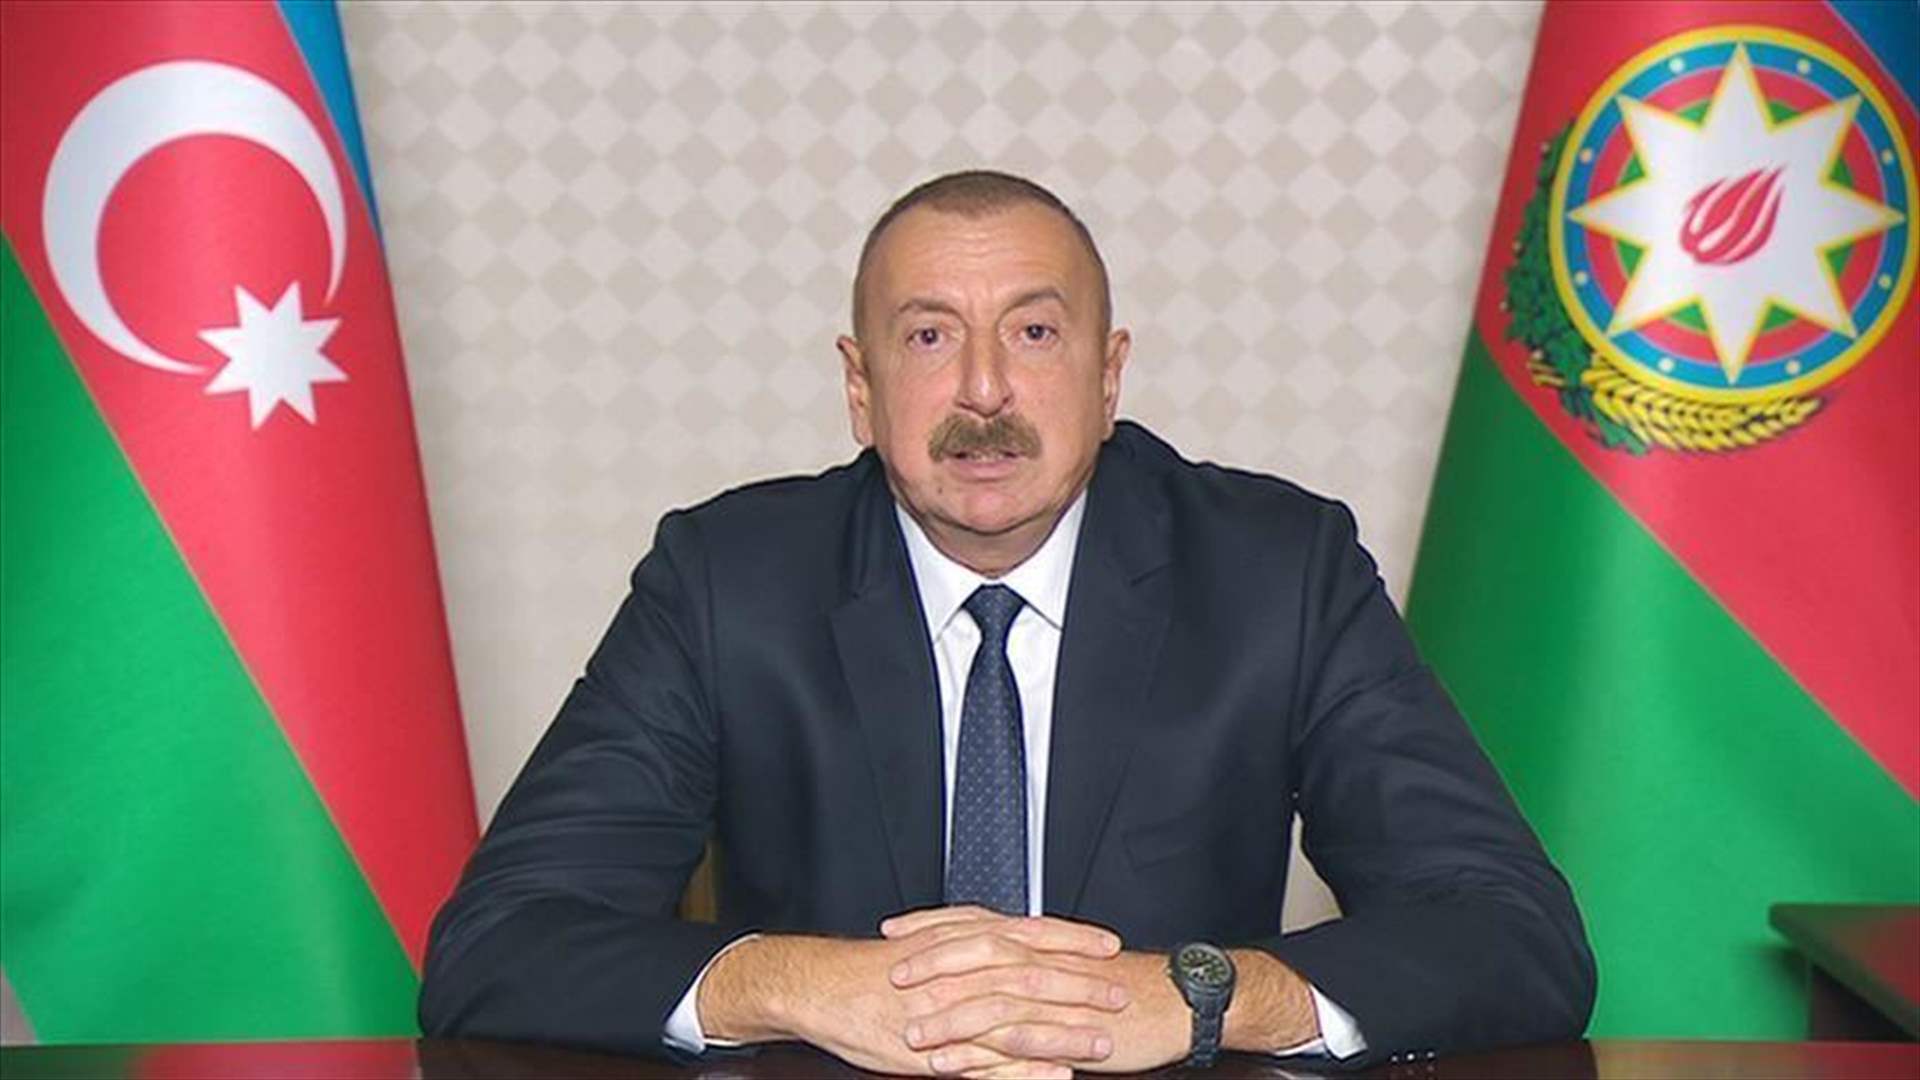 الرئيس الأذربيجاني يتعهّد بضمان حقوق أرمن ناغورني قره باغ